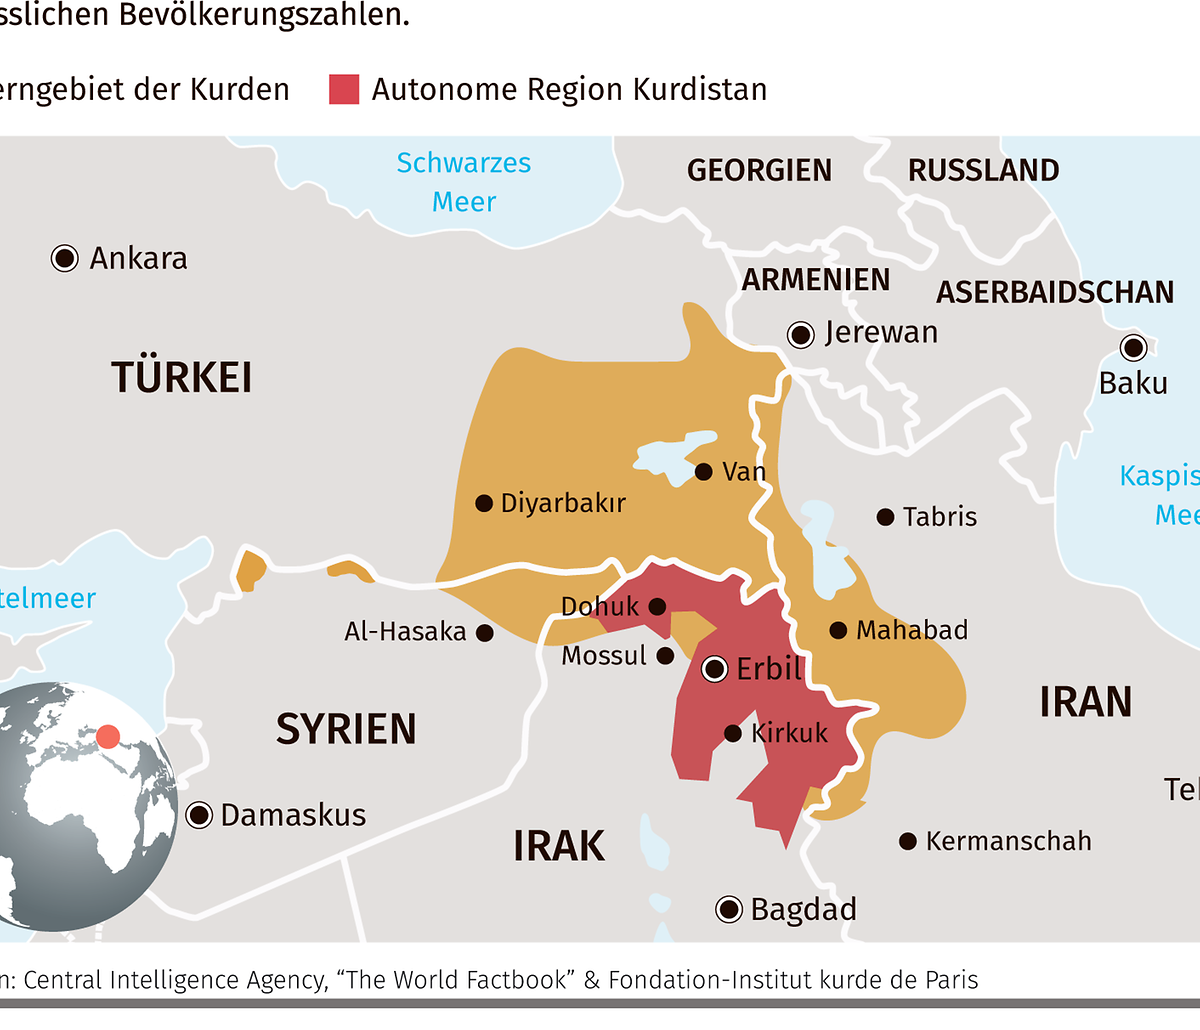 Die Kerngebiete der Kurden